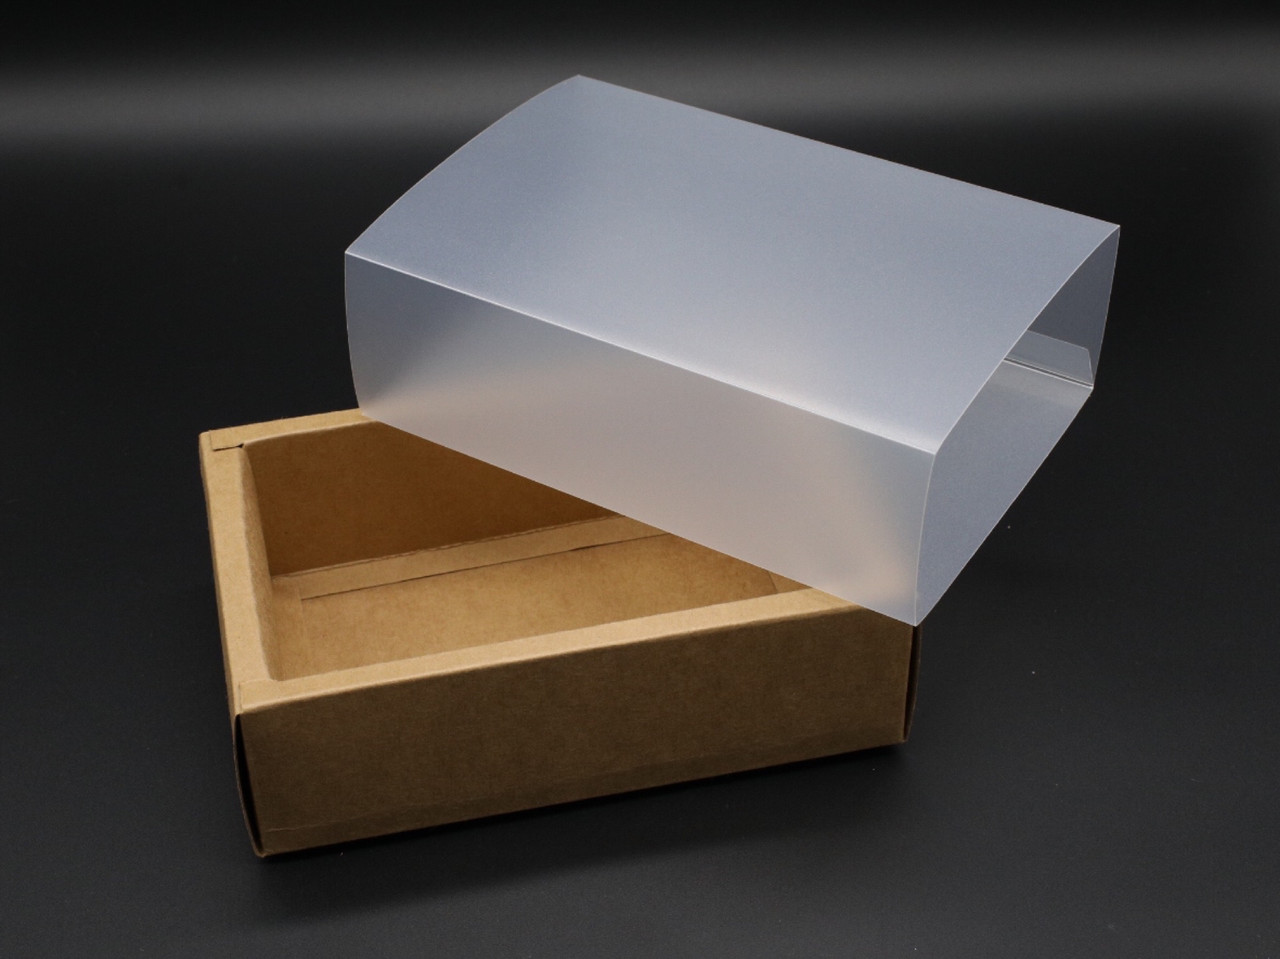 Волшебство за картонной крышкой: новогодние подарочные коробки для wow-эффекта